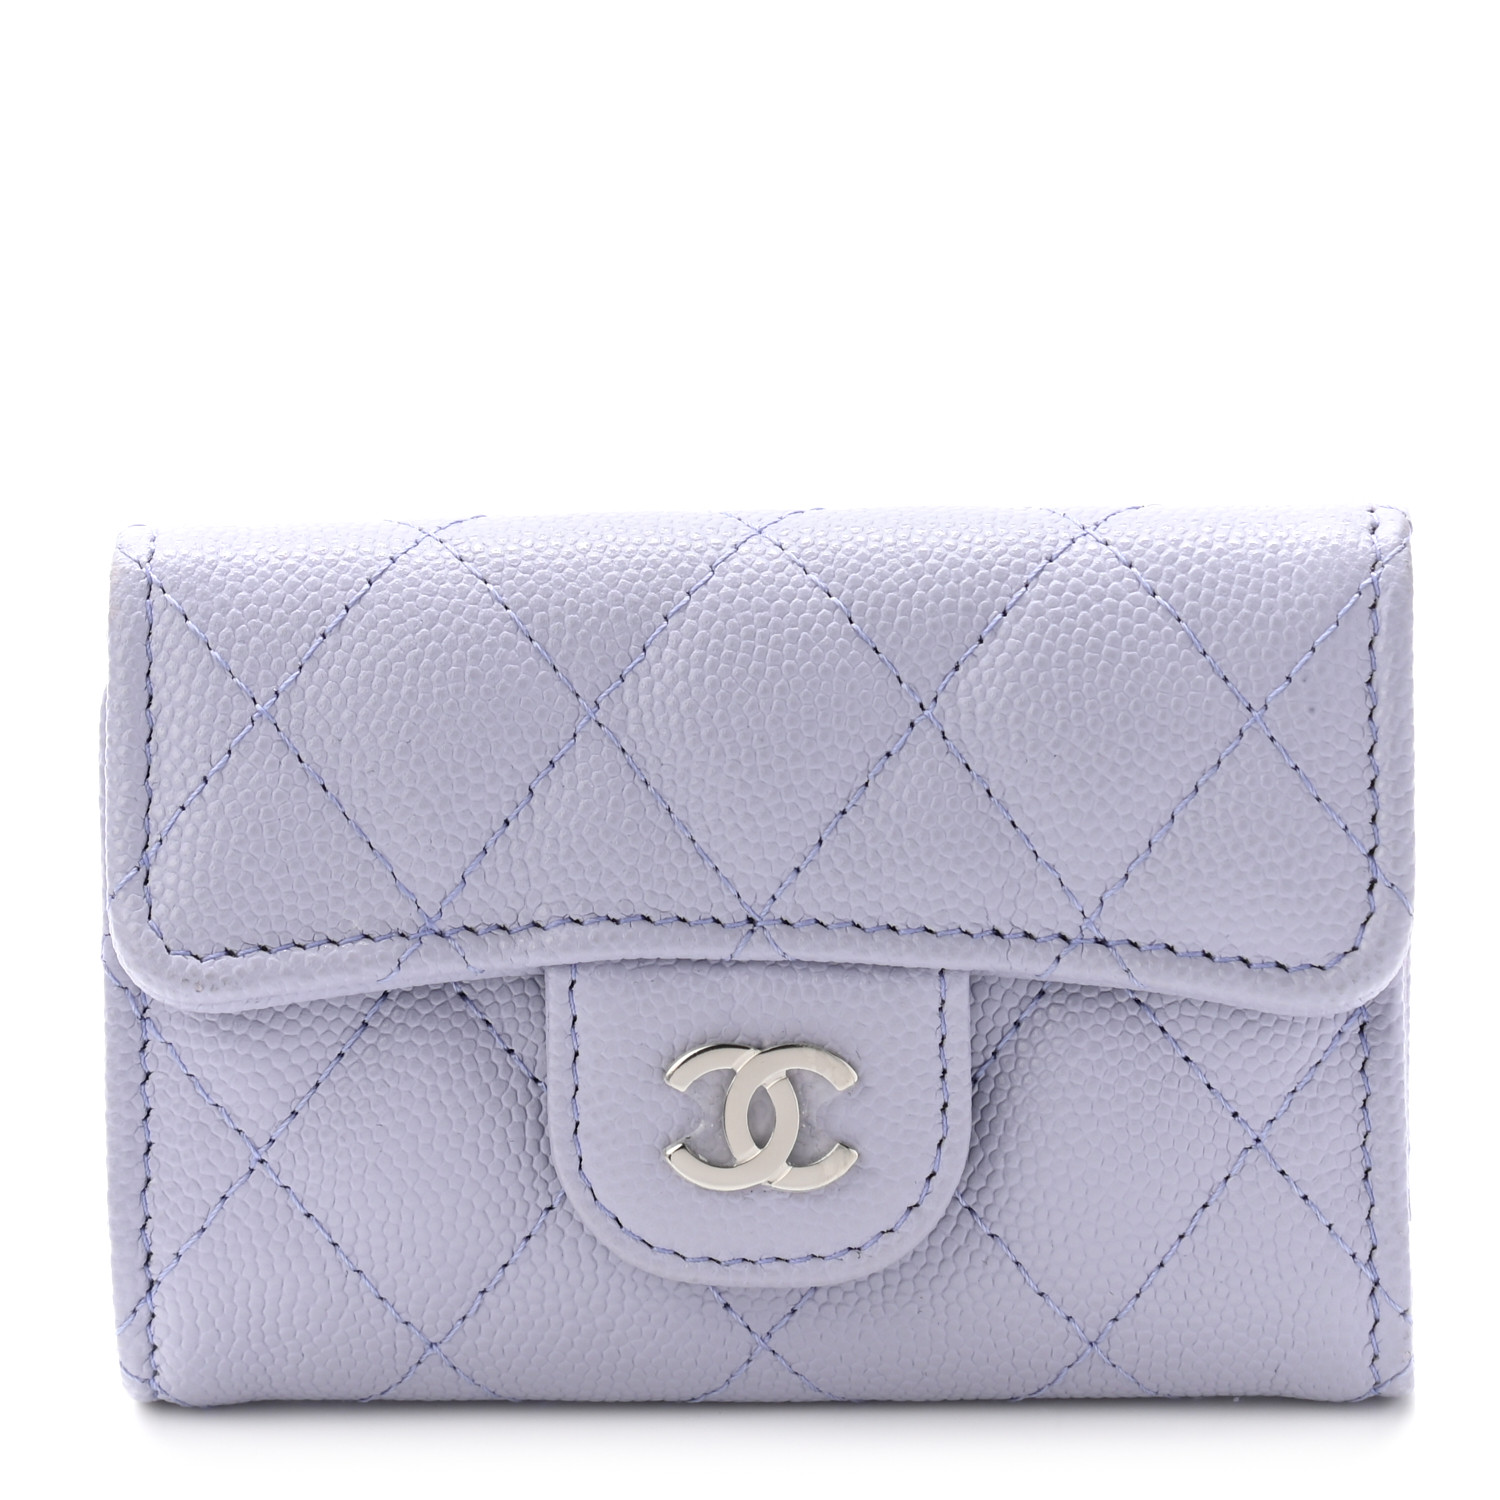 Chanel Key Wallet